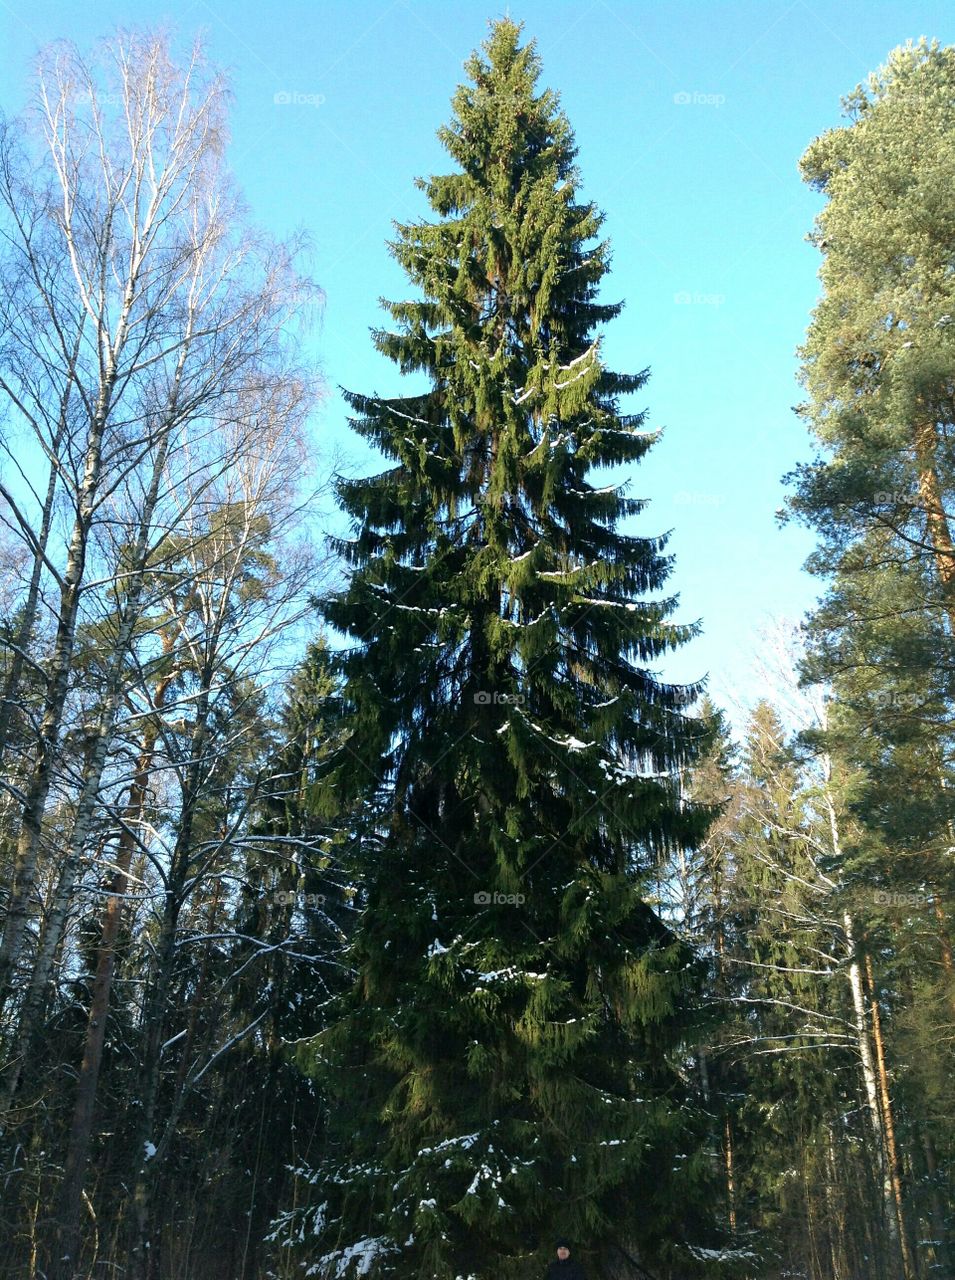 Very tall tree